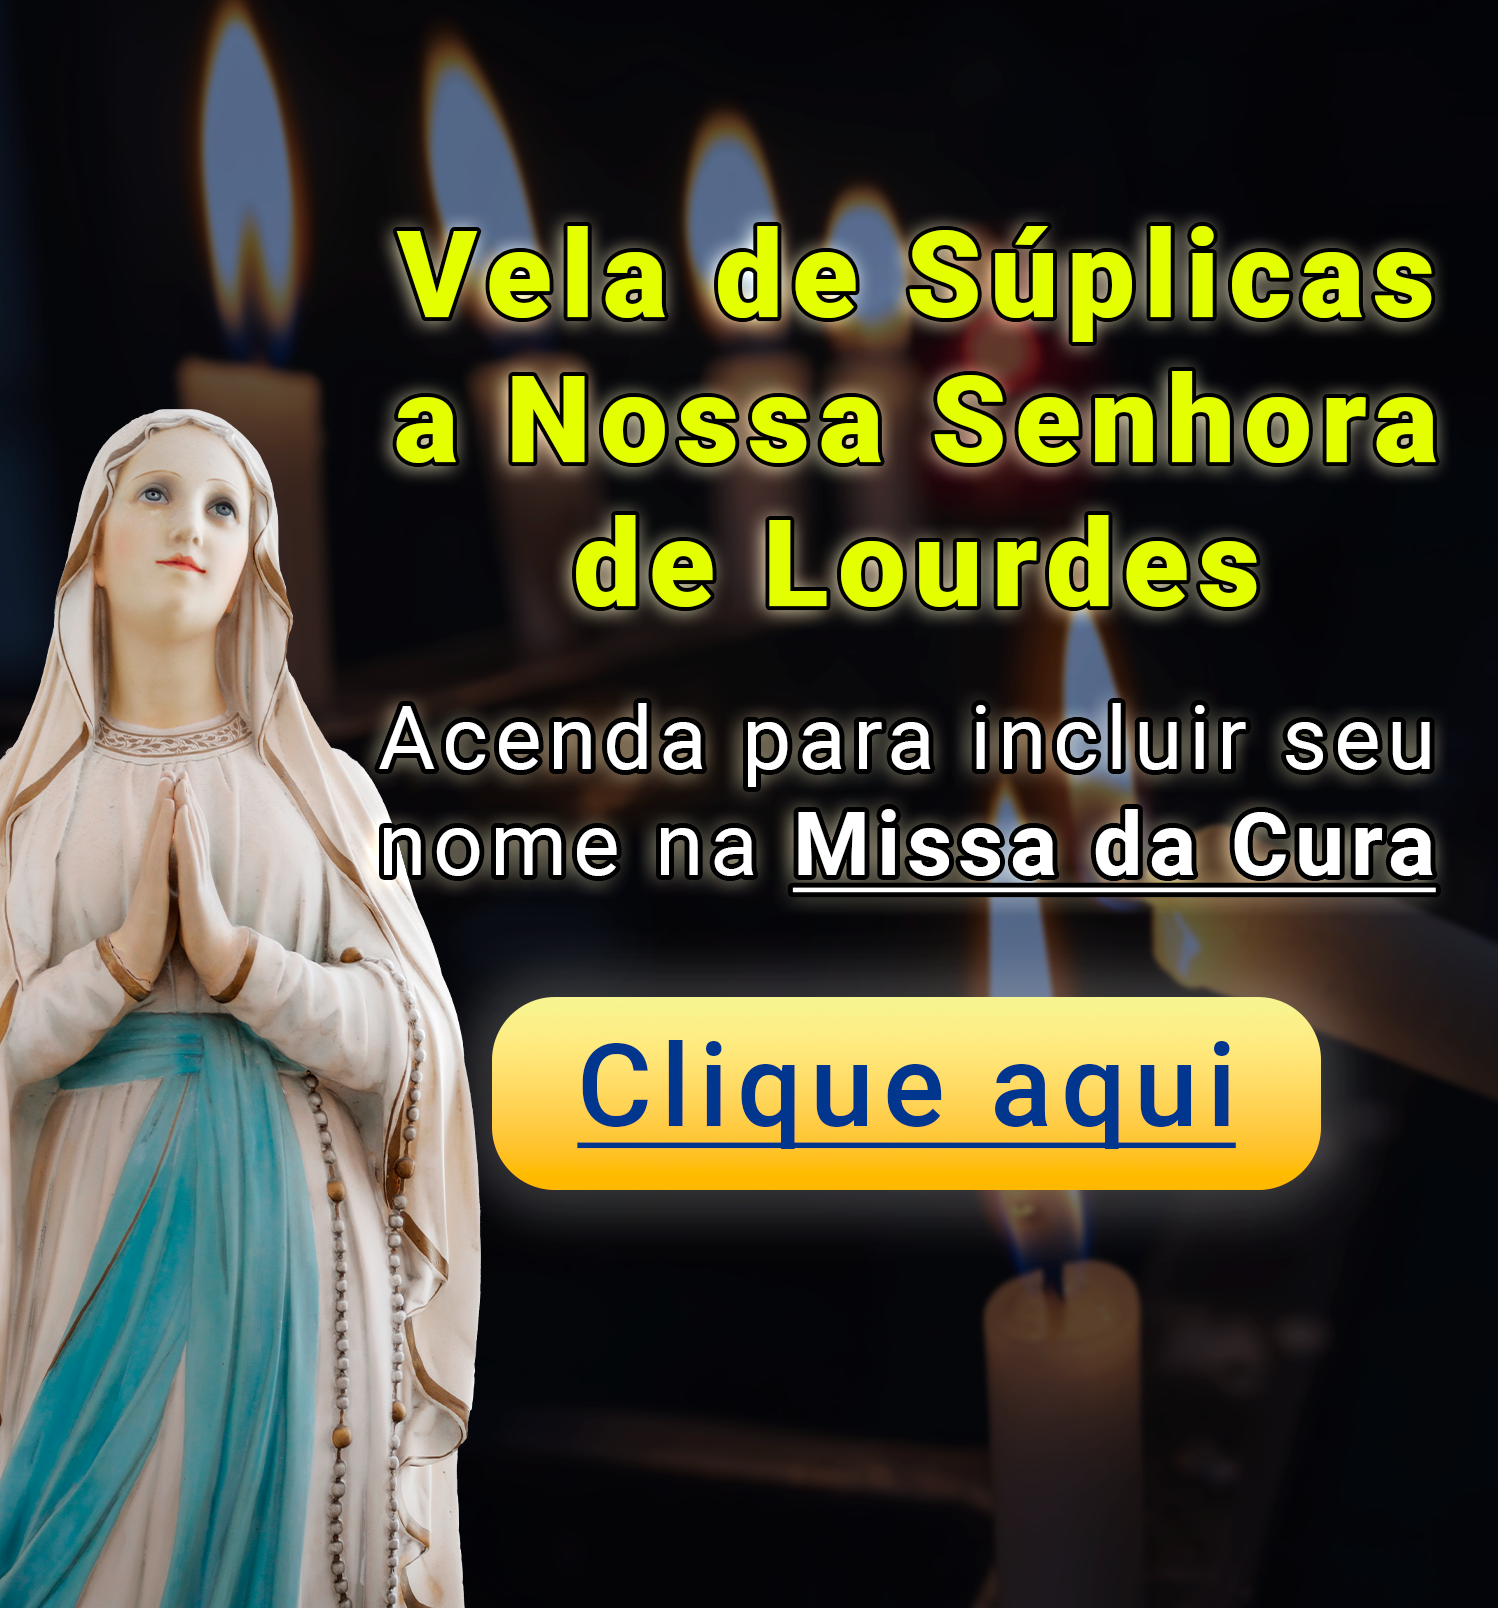 Vela de Nossa Senhora de Lourdes